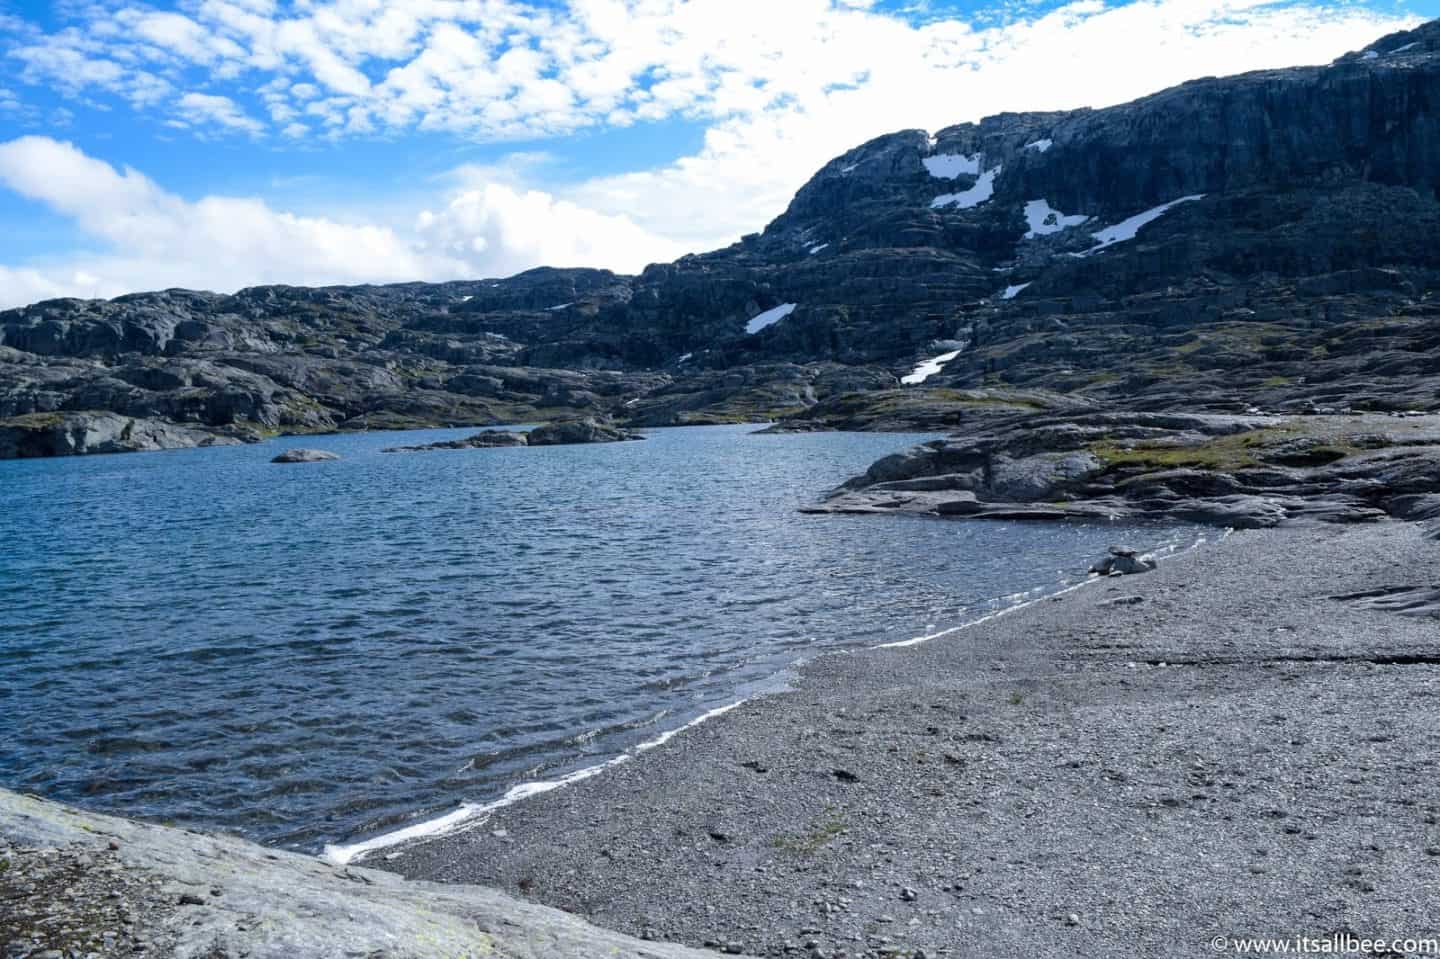 Norway's Trolltunga Hike From Bergen